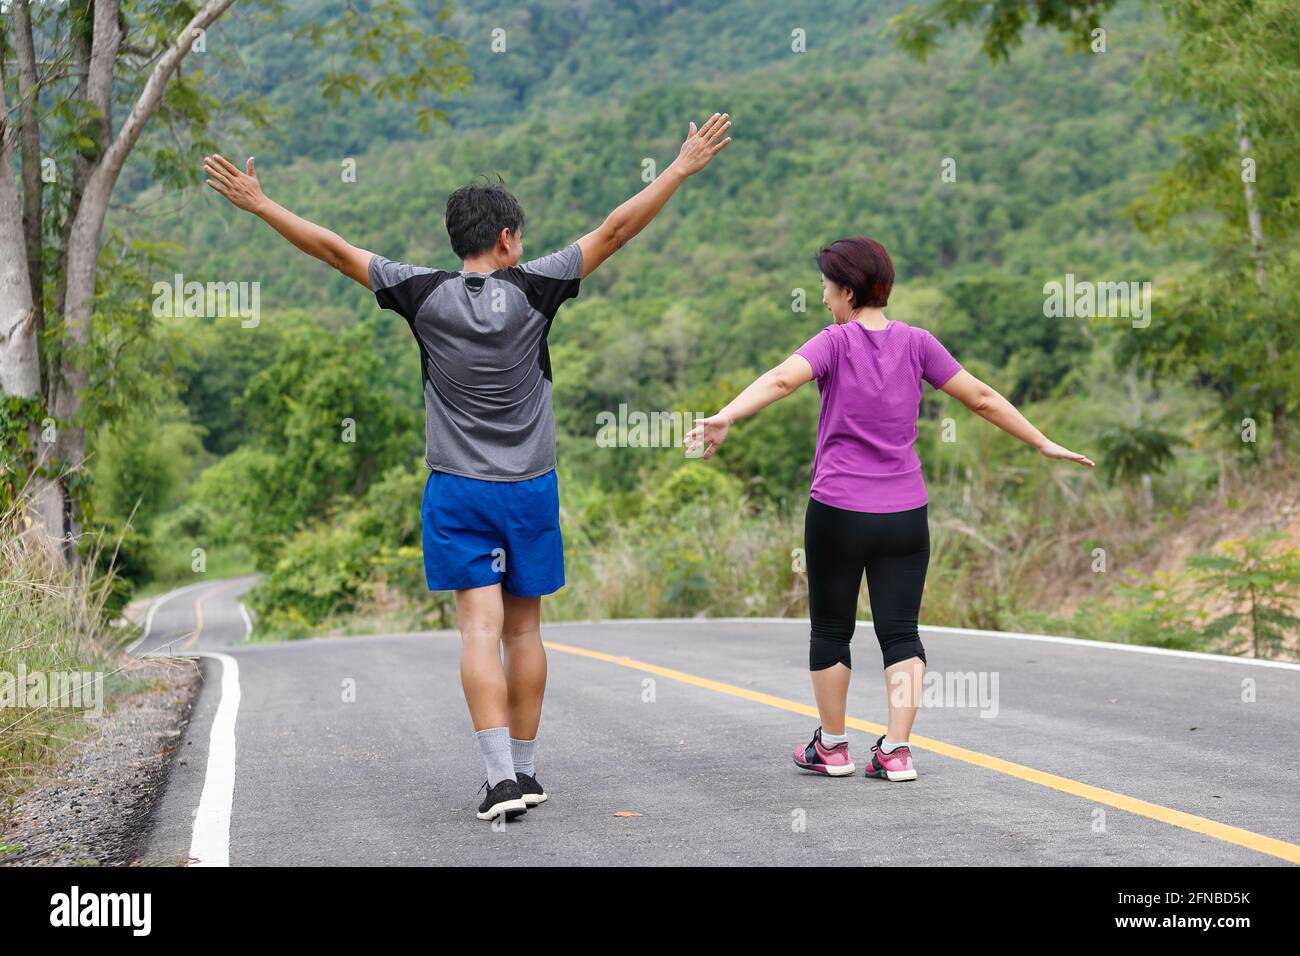 Un couple asiatique d'âge moyen s'étire les muscles avant de faire du jogging dans le parc Banque D'Images